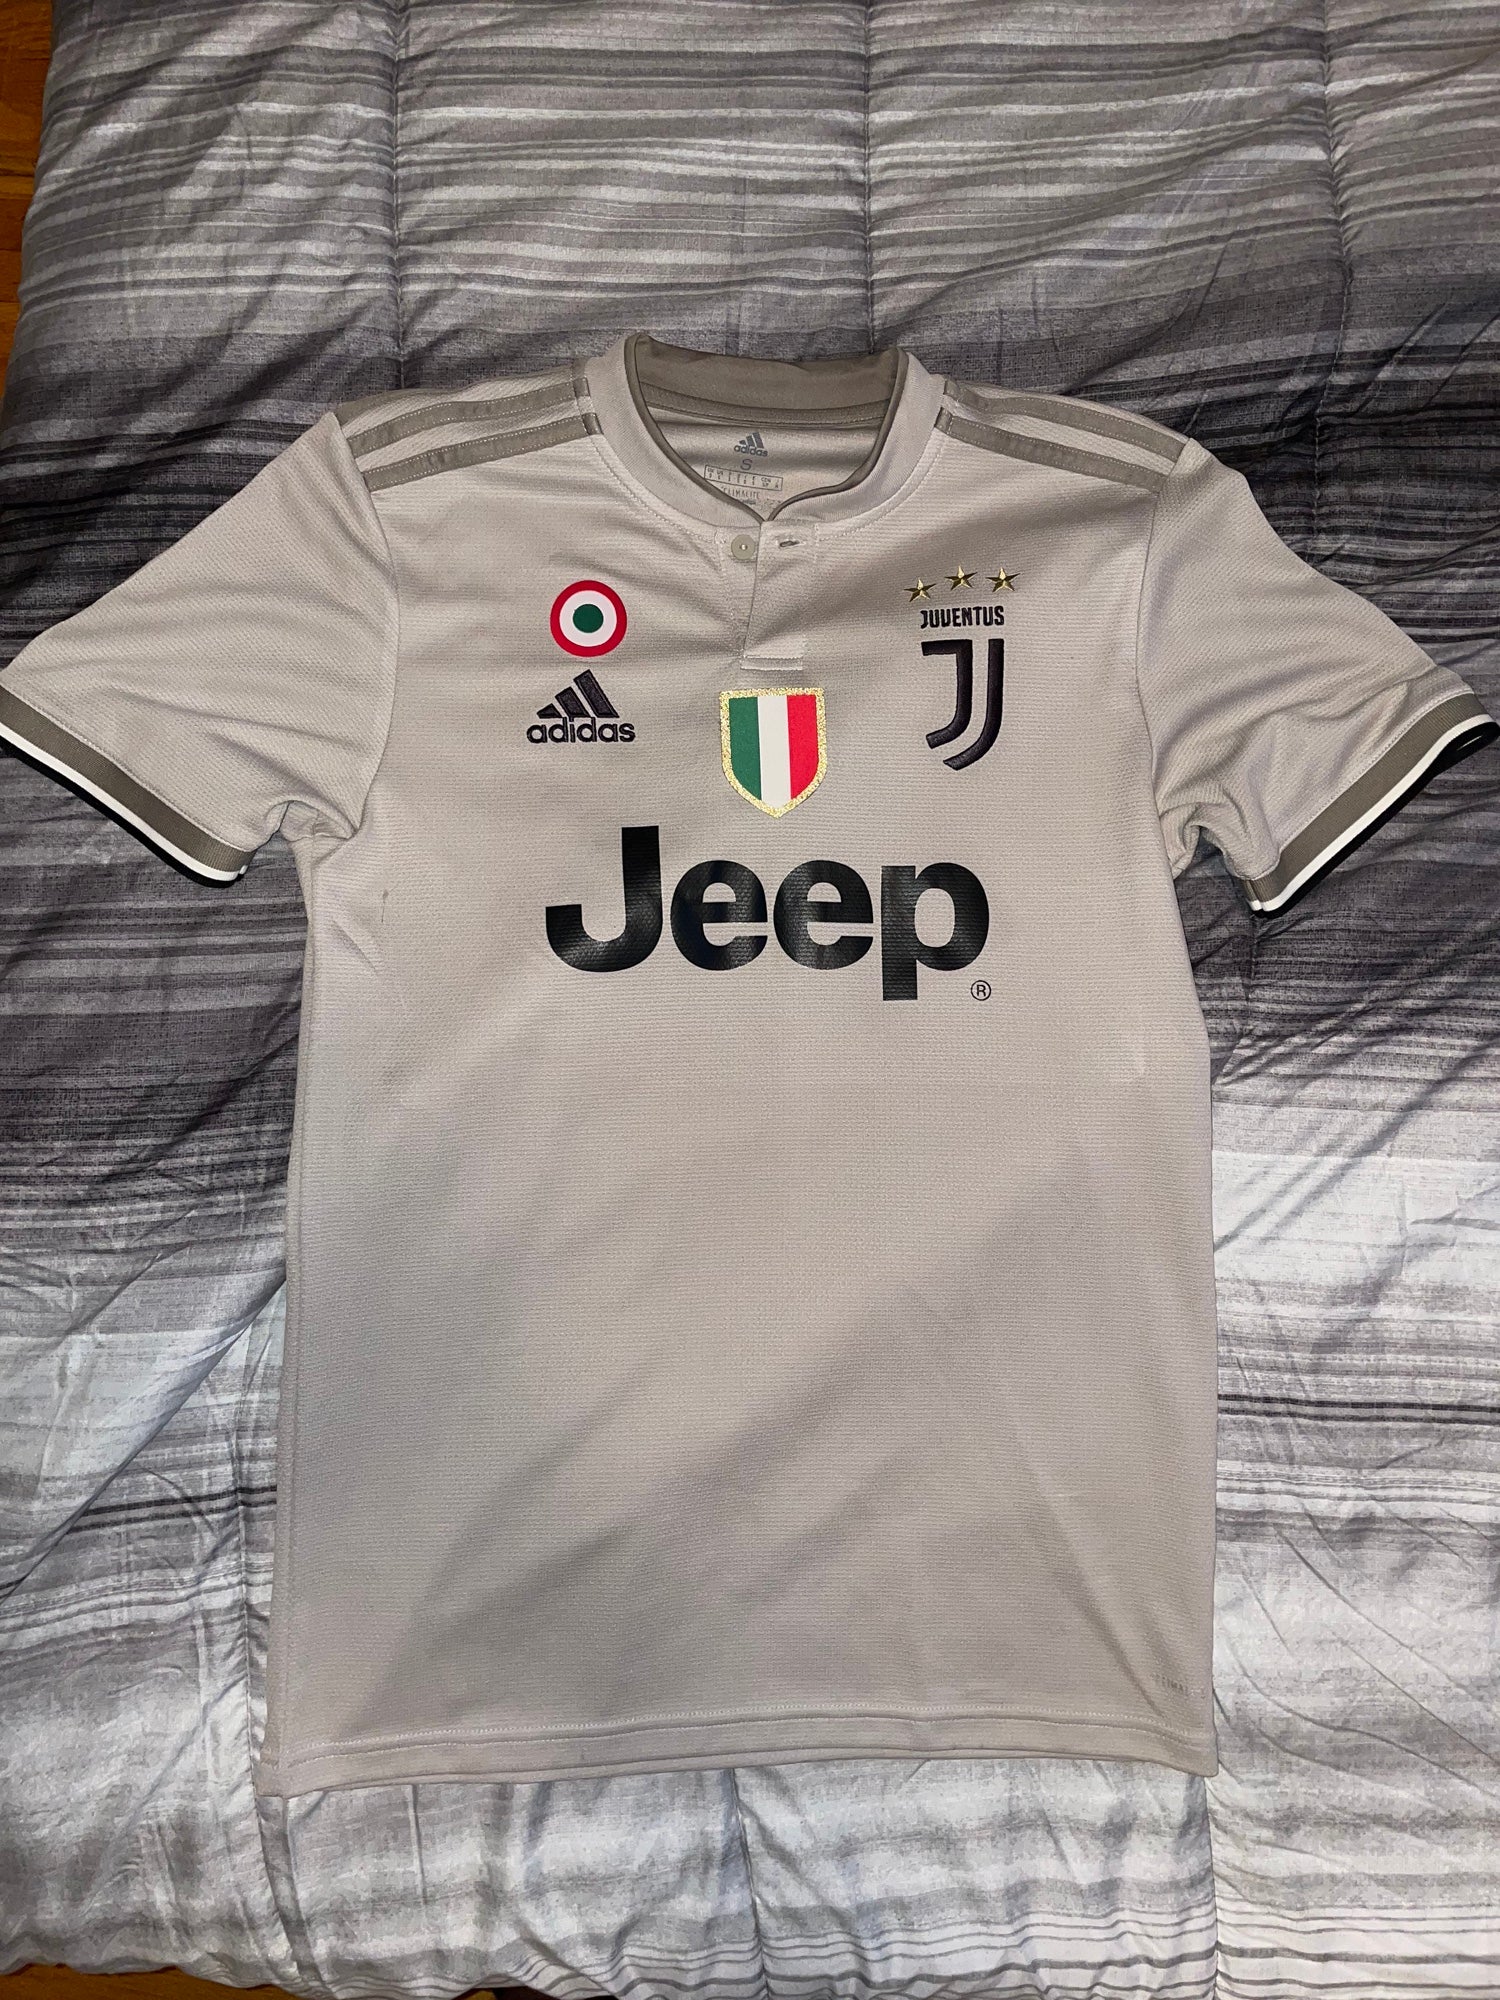 Juventus 2017-18 Away Kit Leaks?